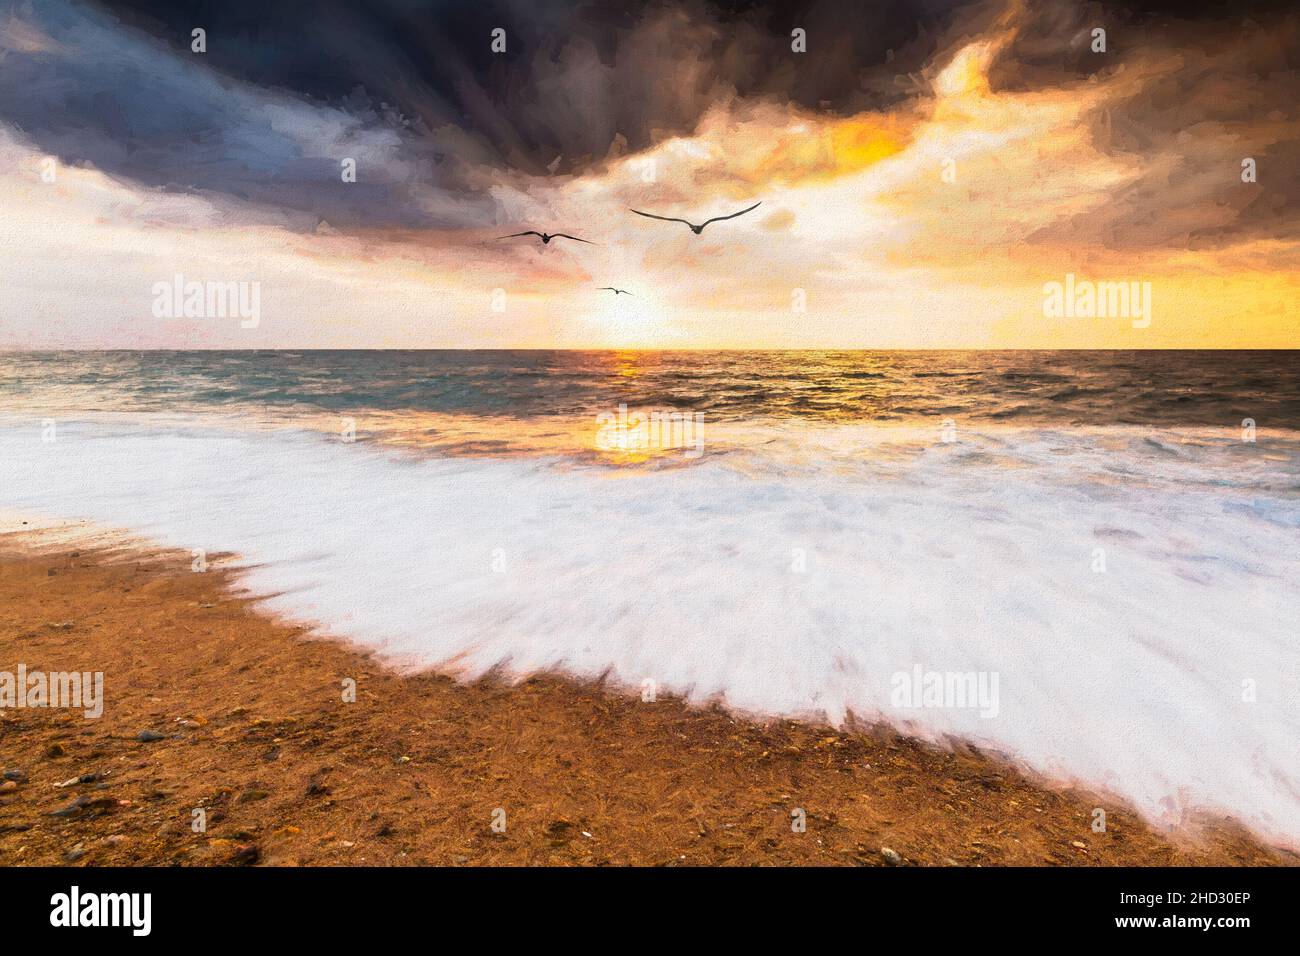 Tre silhouette di uccelli stanno volando nel cielo di tramonto dell'oceano Con i raggi del sole che emanano in UN'immagine di stile di pittura Foto Stock